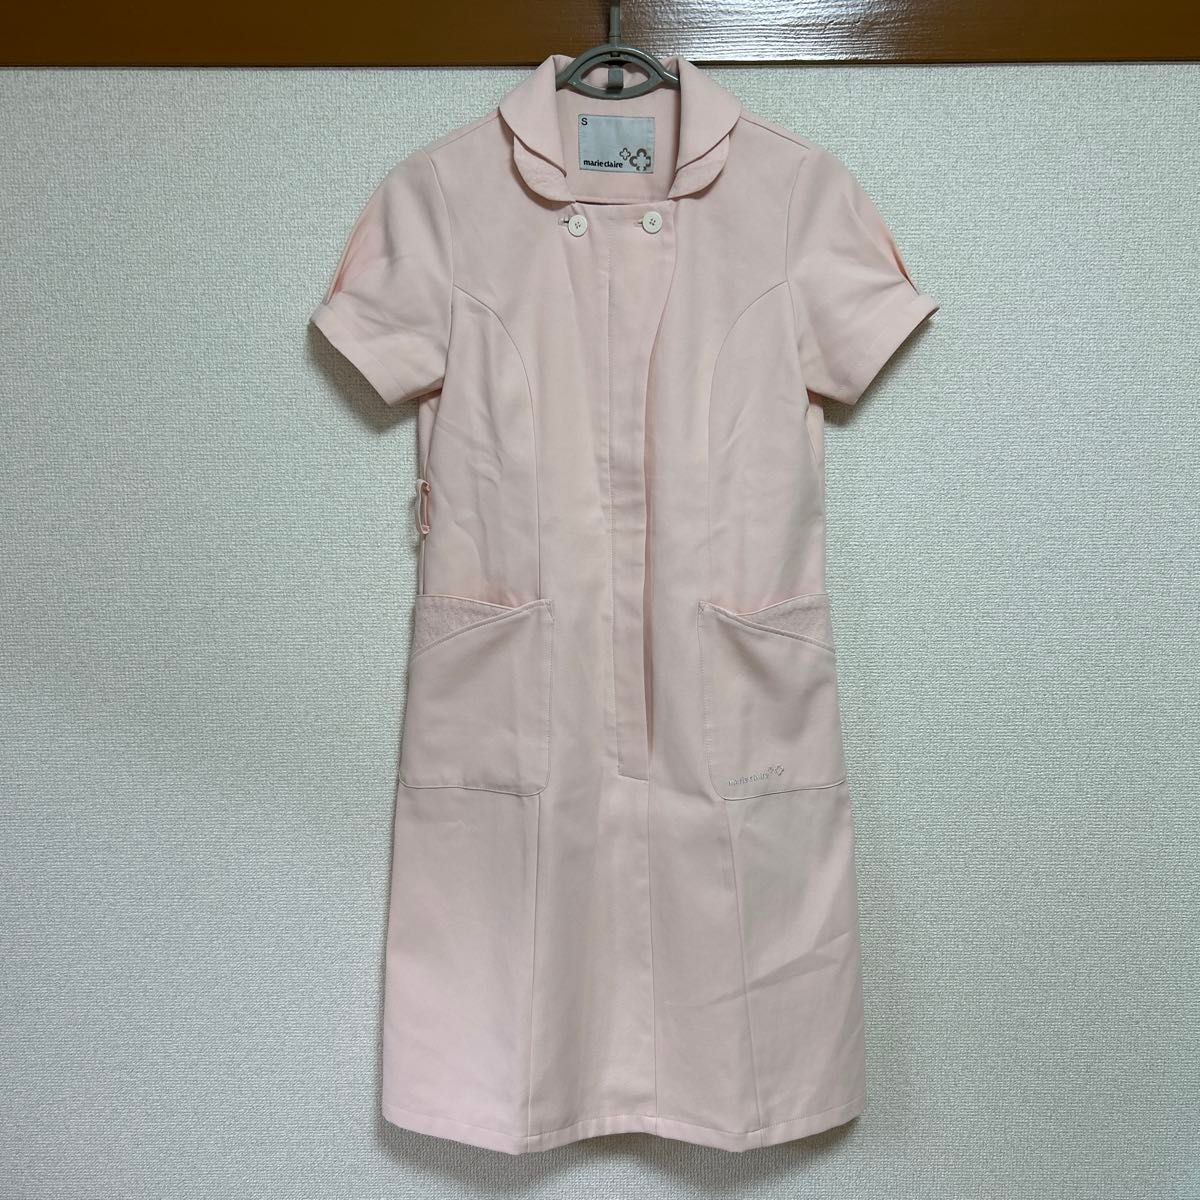 ナース服 ワンピース ピンク 半袖 ナースワンピース 看護師 制服 Sサイズ